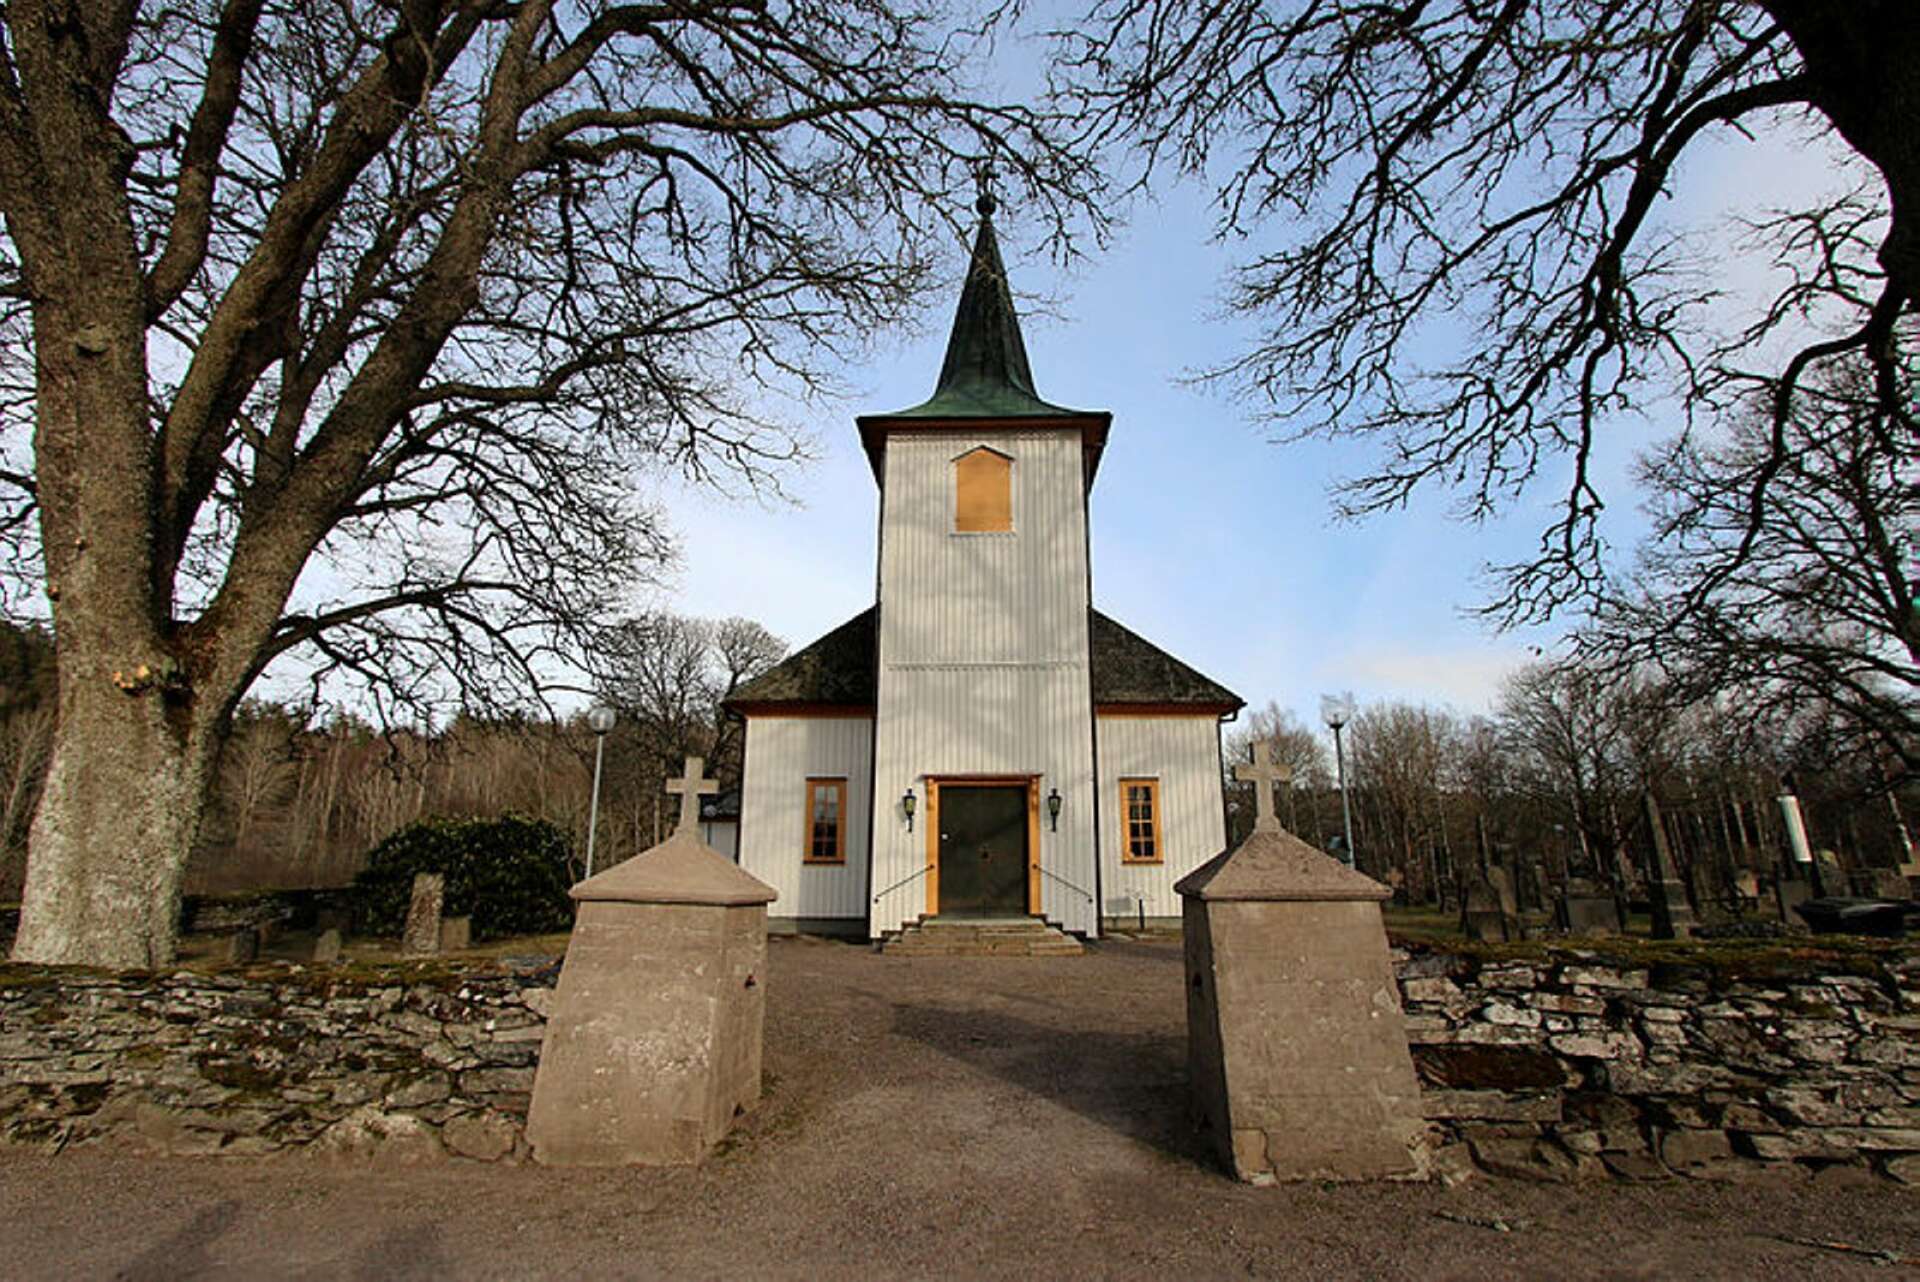 Skärtorsdagens gudstjänst i Tisselskog firas med nattvardsvinet i särkalkar av engångskaraktär.